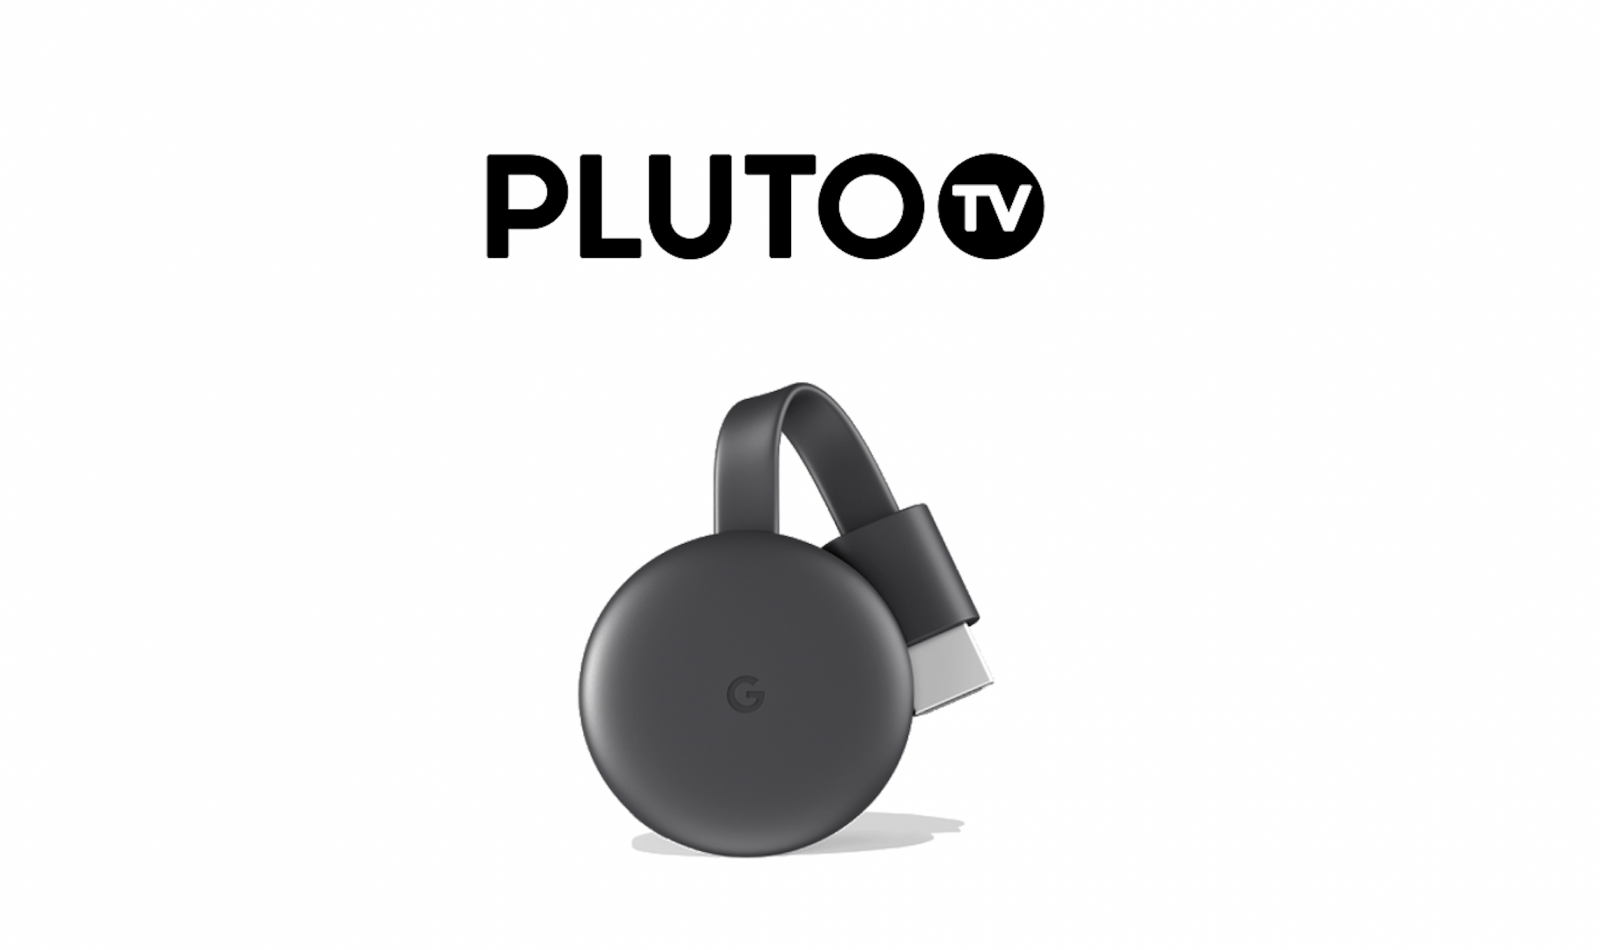 Chromecast Pluto TV